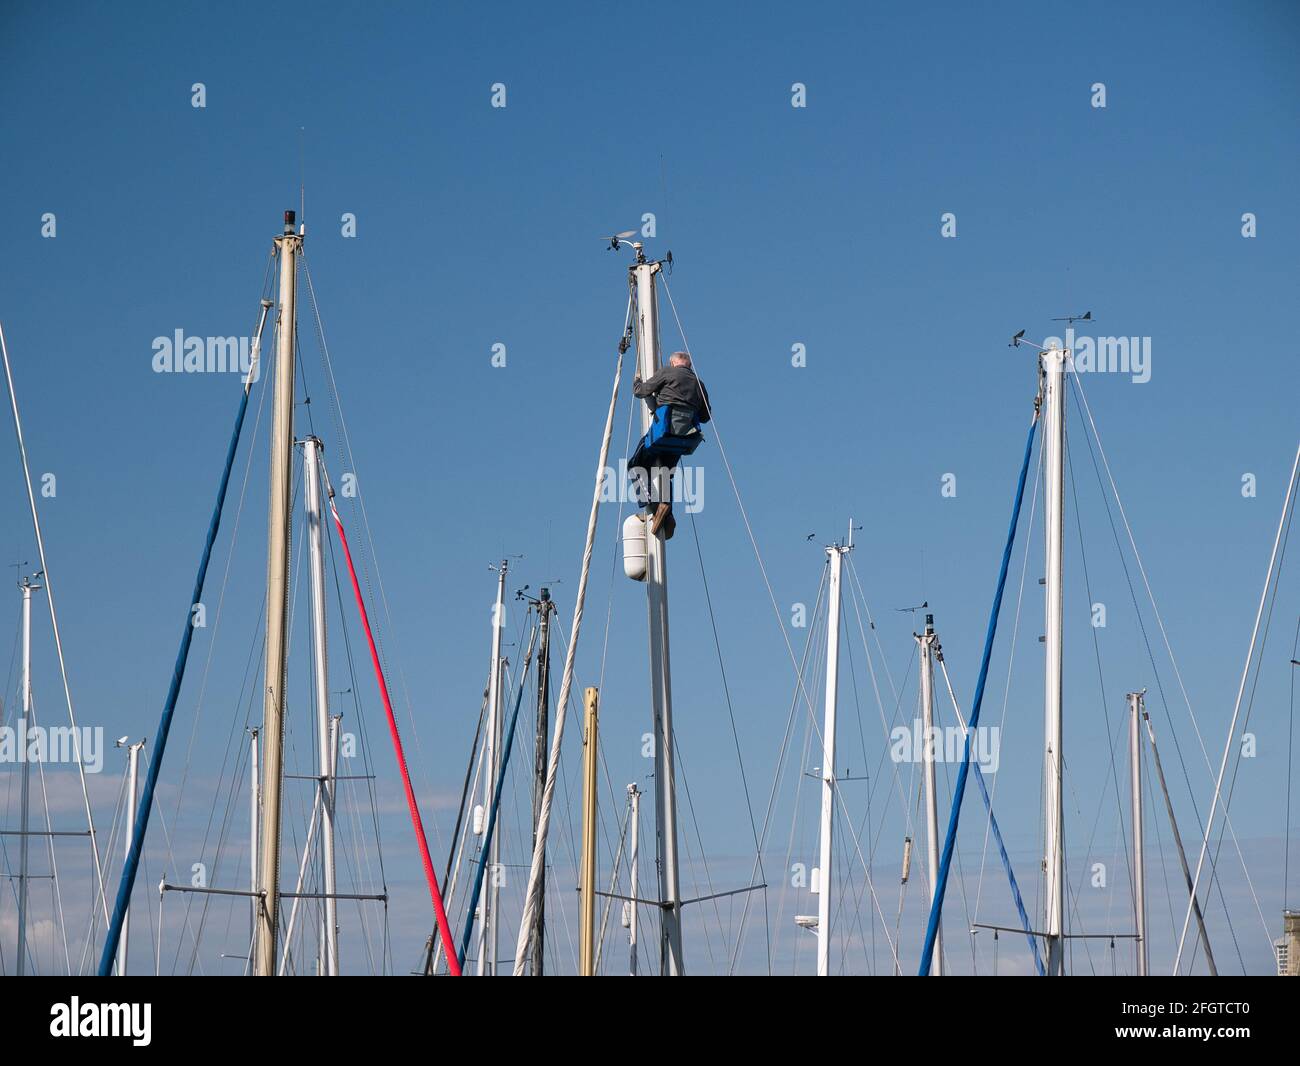 In una giornata tranquilla e soleggiata con un cielo blu chiaro, un uomo lavora in cima al palo di uno yacht ormeggiato in una marina. Appaiono altri montanti yacht. Foto Stock